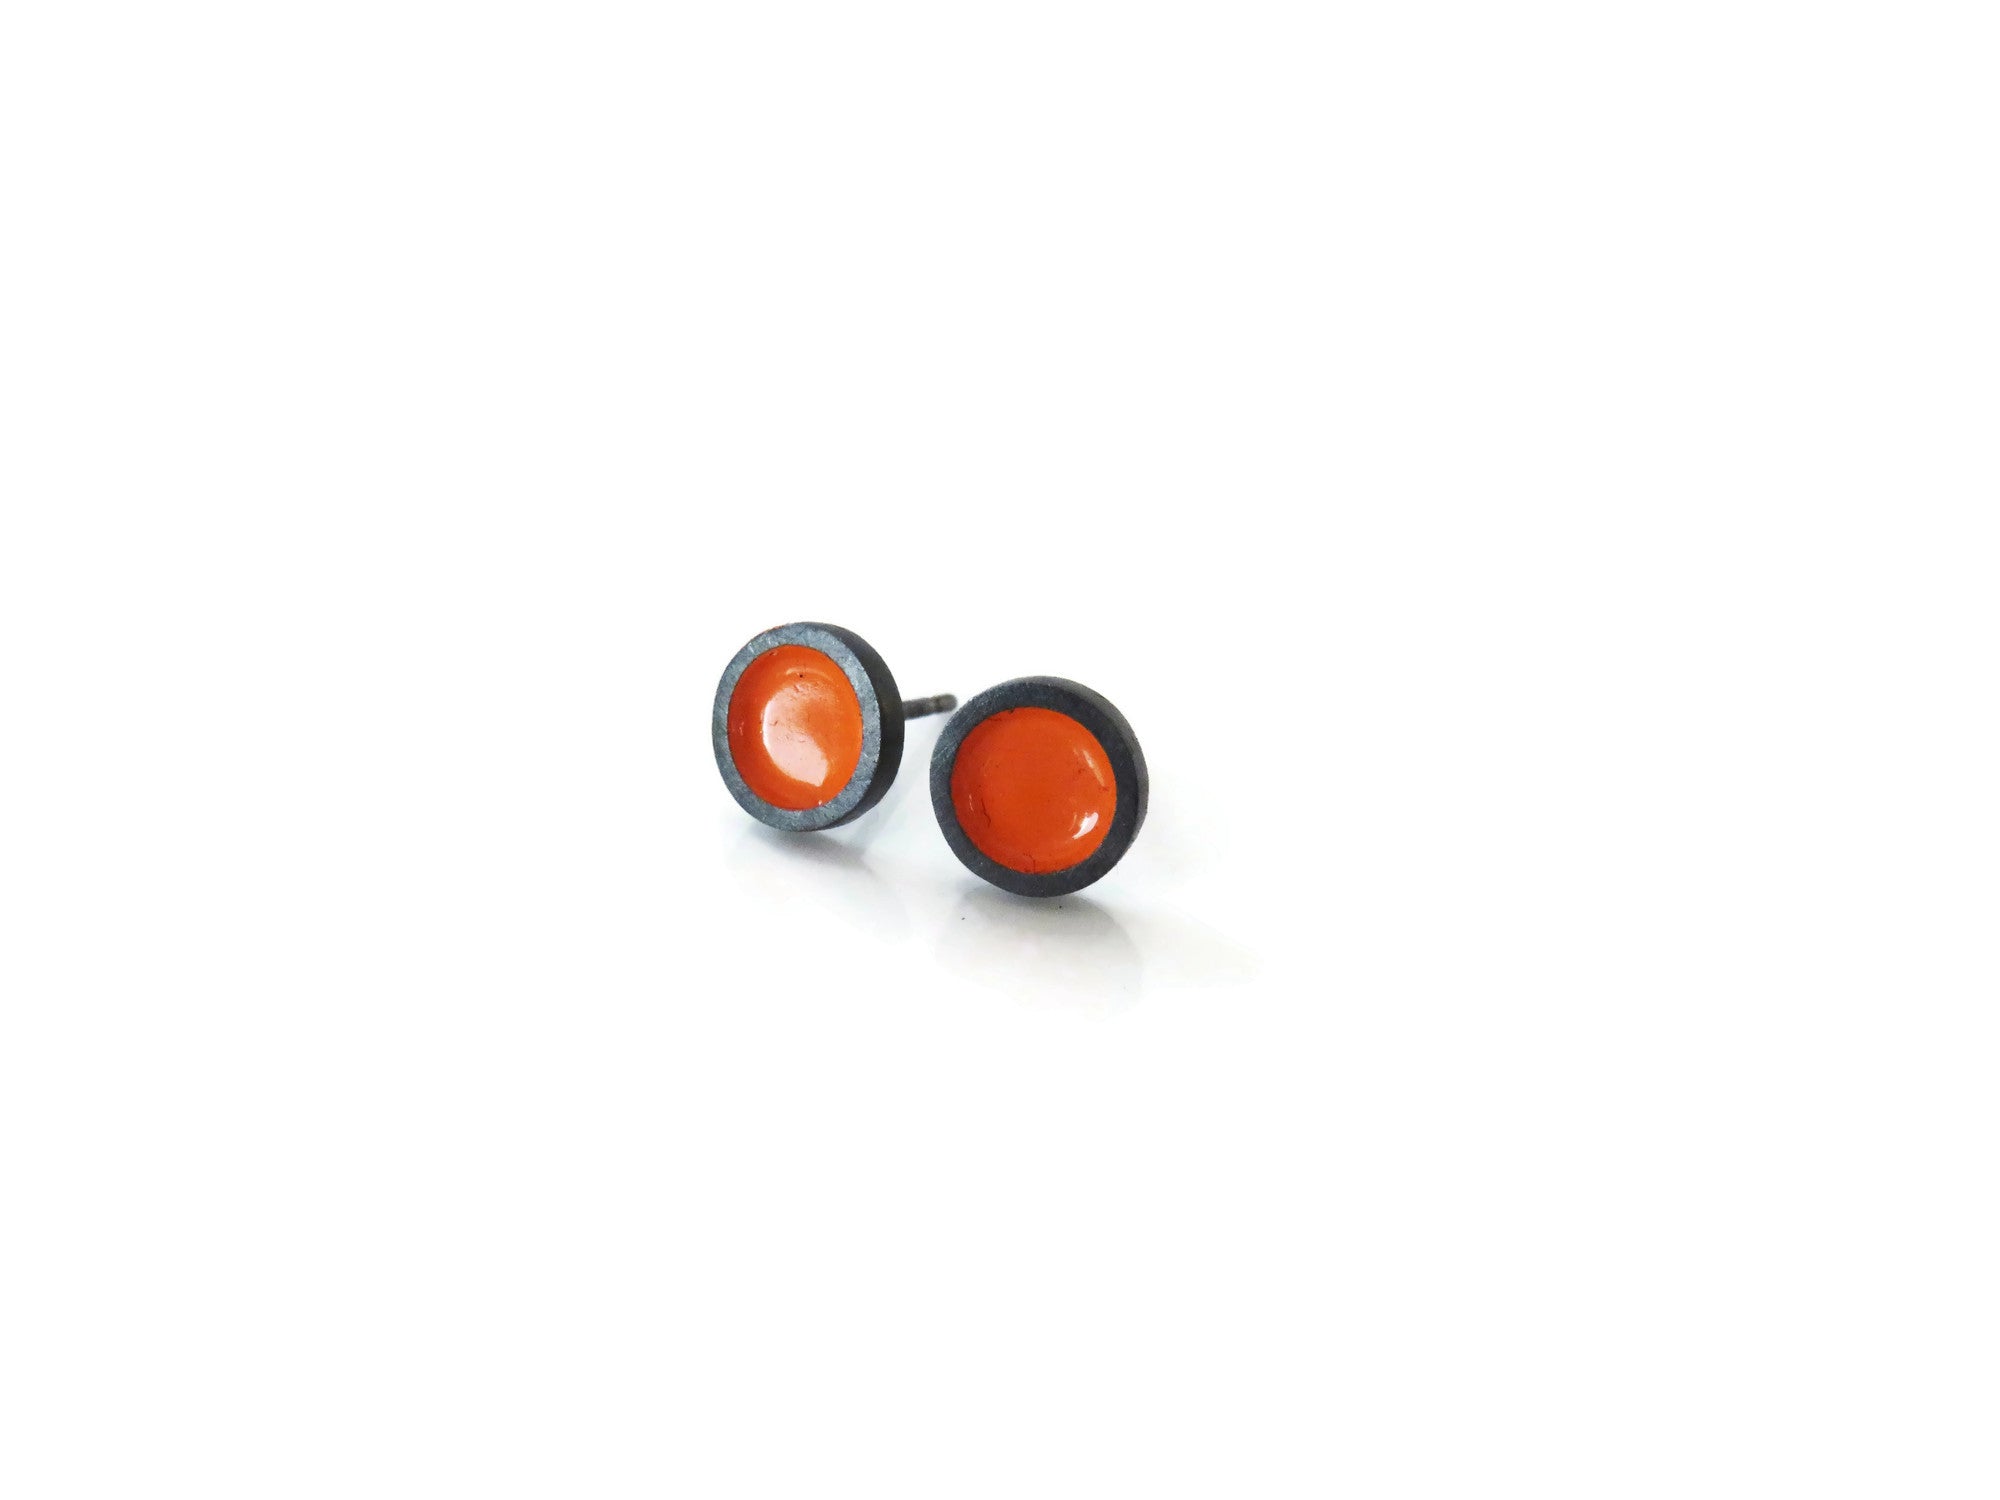 Enameled Orange Stud Earrings in Oxidized Silver